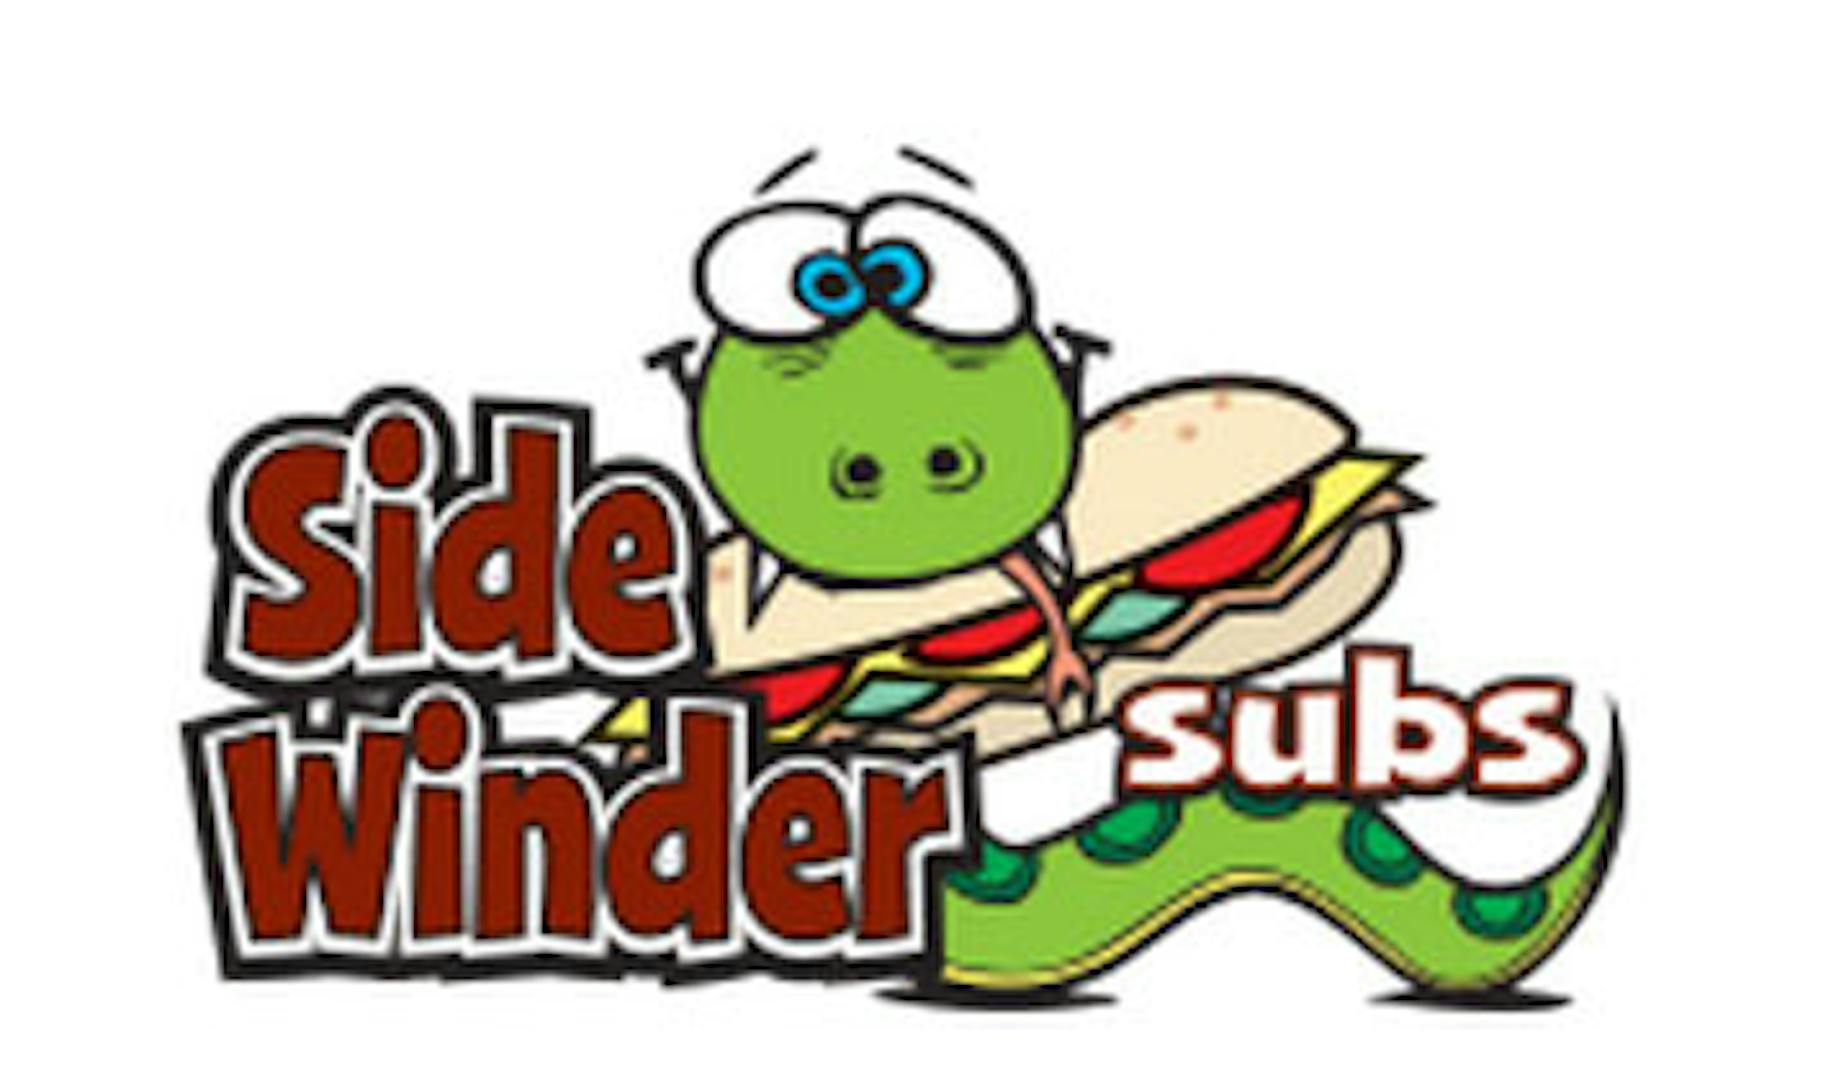 Sidewinder Subs